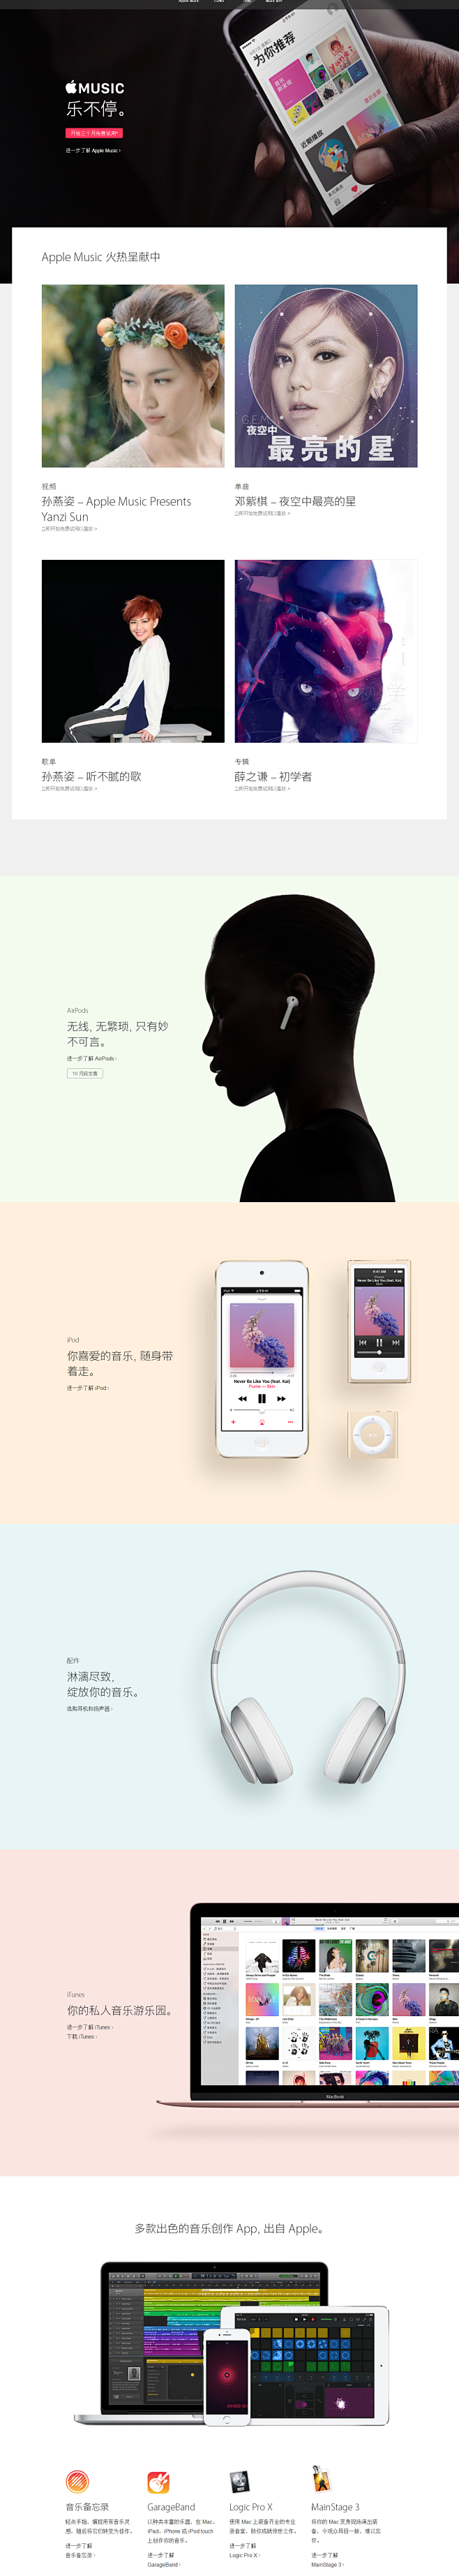 Music Apple 中国 苹果音乐itunes配件iso10和ipod苹果官网海报设计图片背景淘宝海报设计